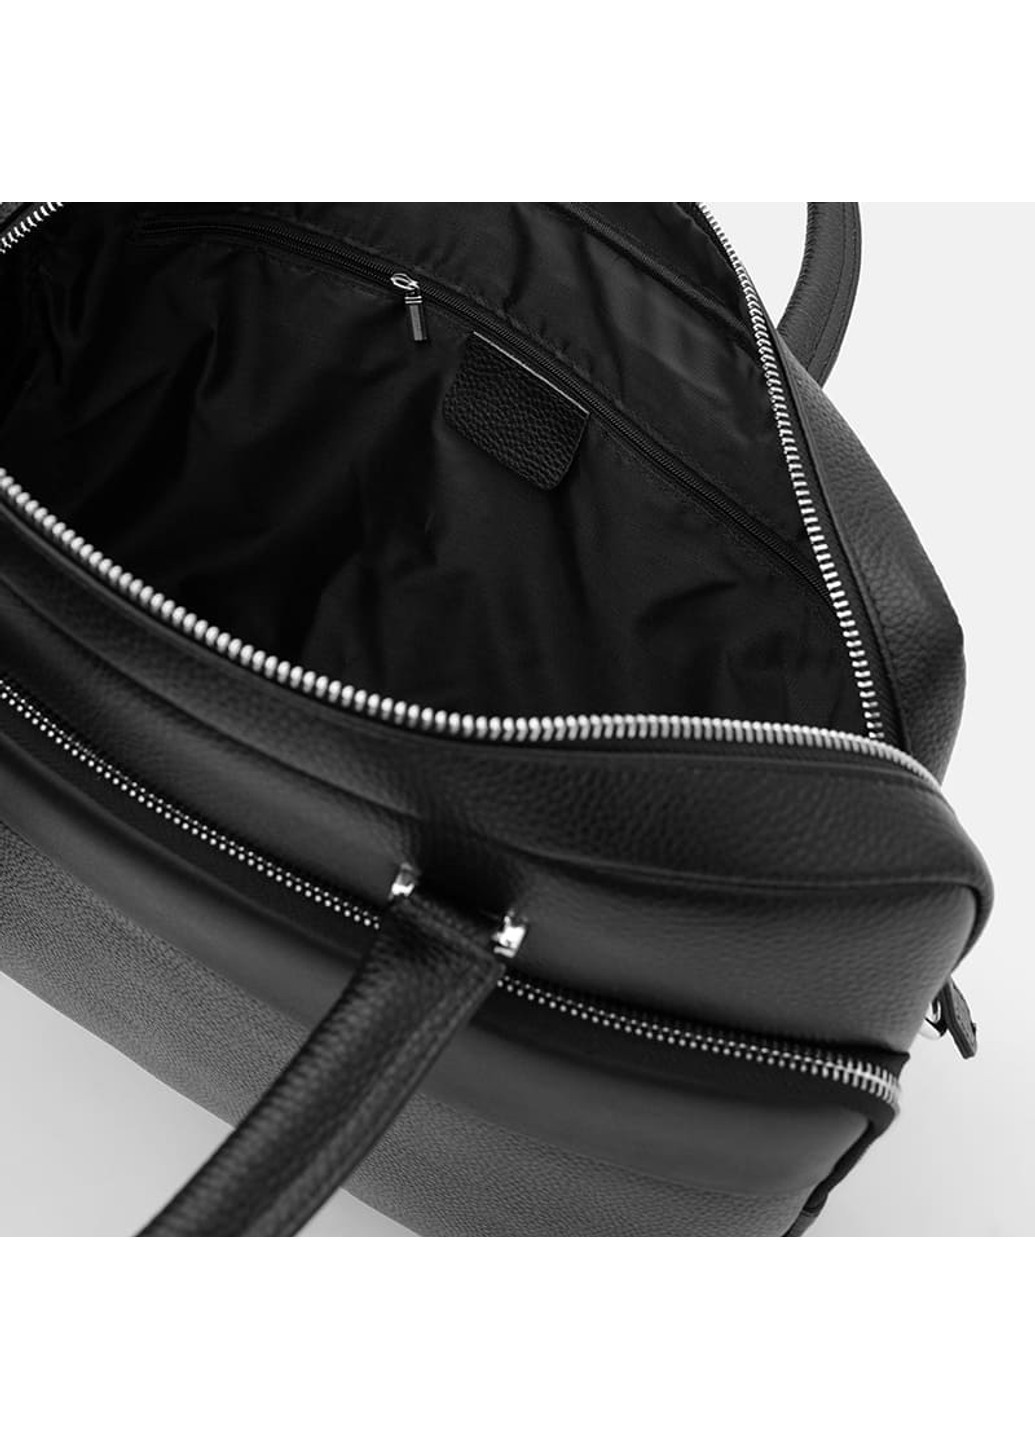 Чоловічі шкіряні сумки K18820-1bl-black Borsa Leather (266143414)